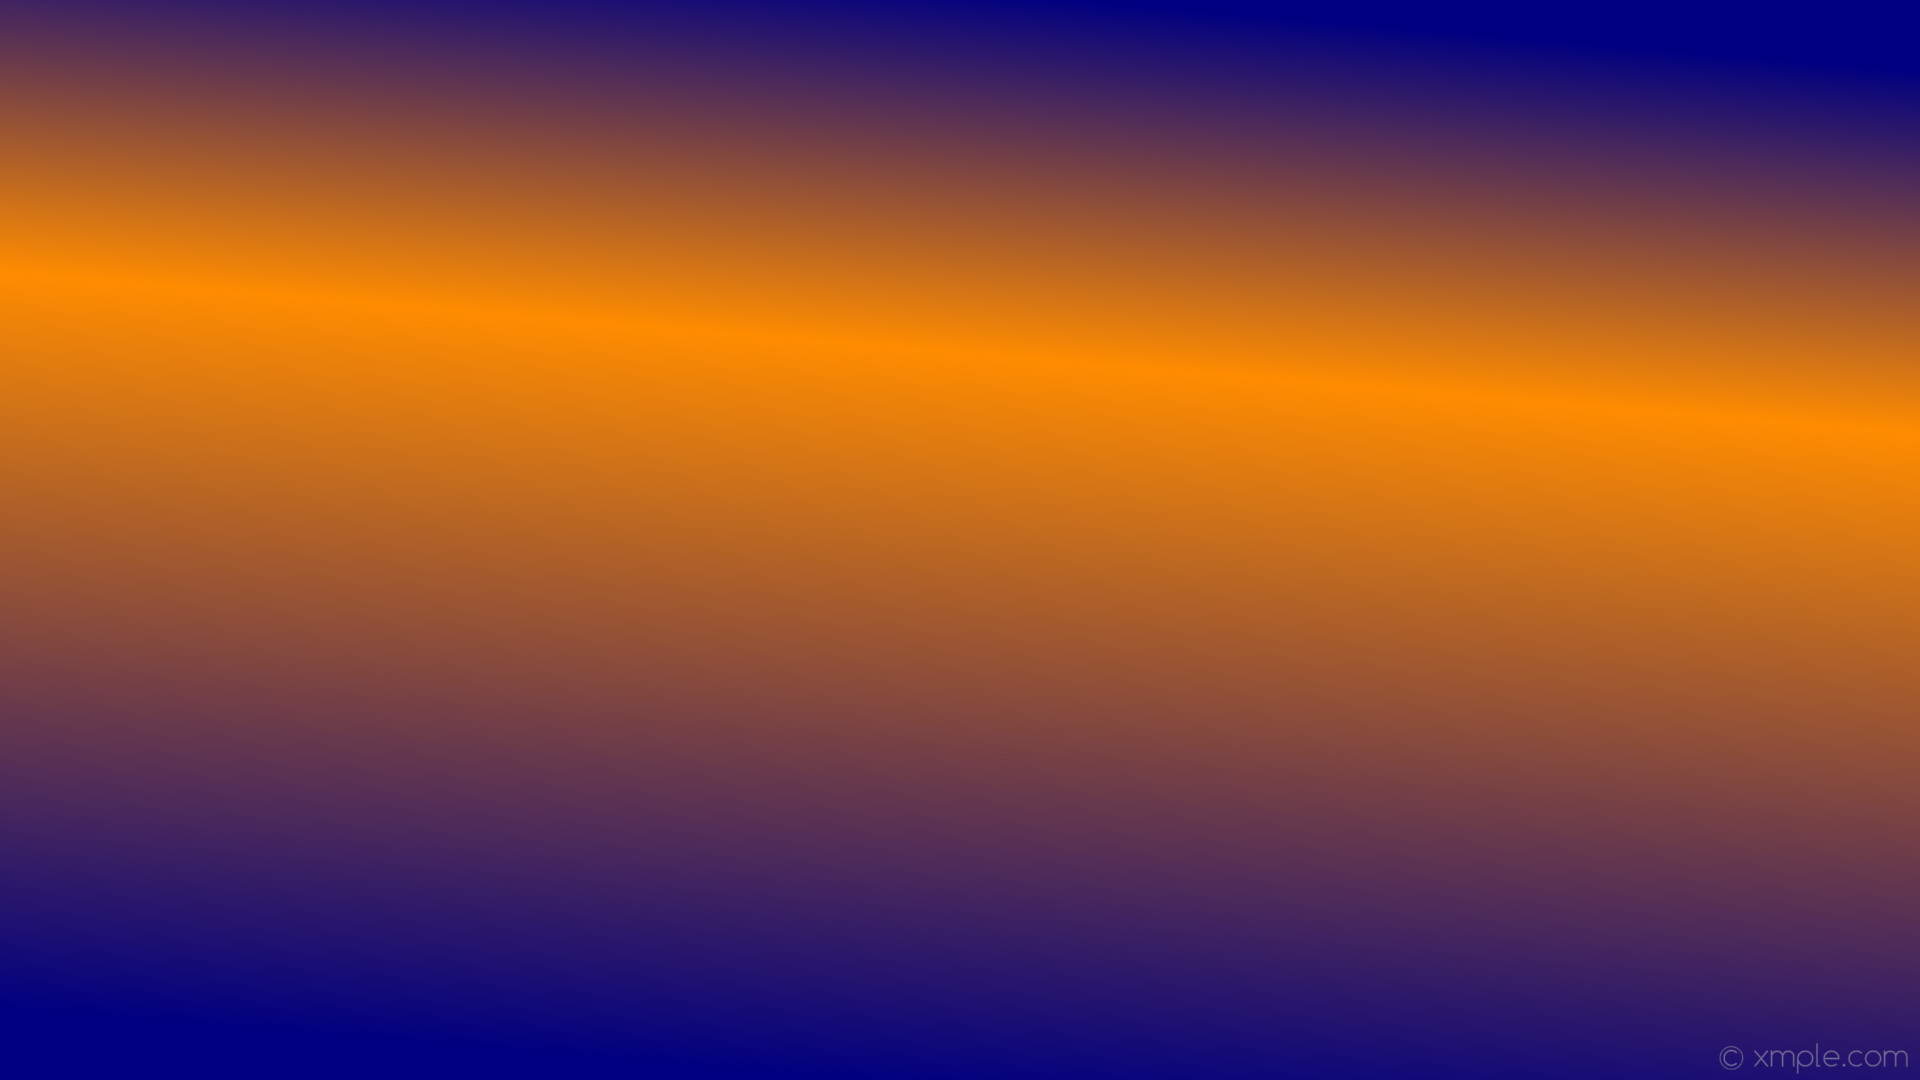 1920x1080 wallpaper linear orange blue gradient highlight navy dark orange #000080  #ff8c00 75Â° 33